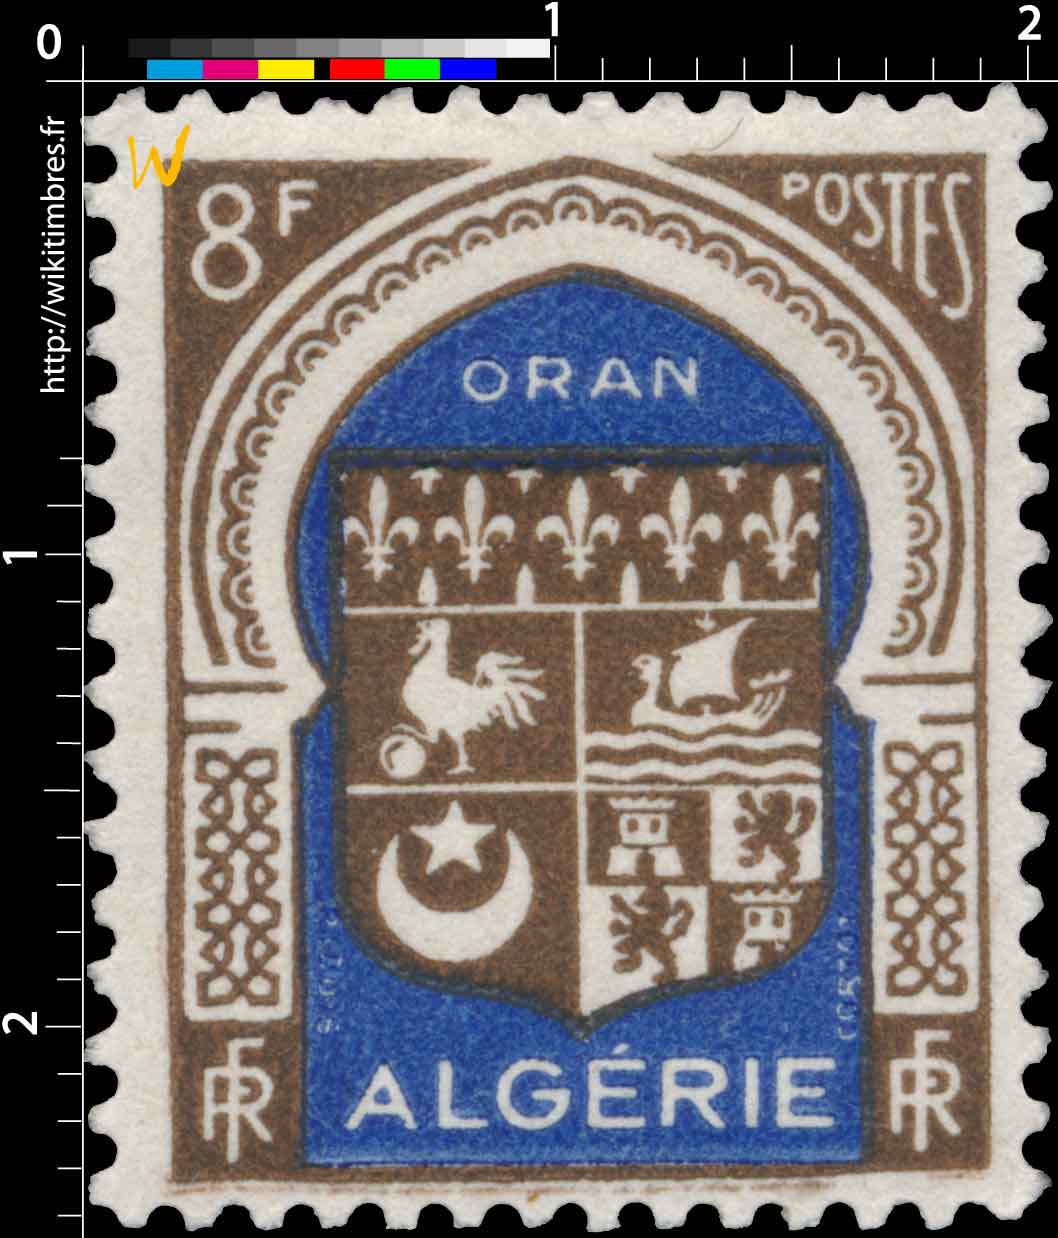 Algérie - Oran 